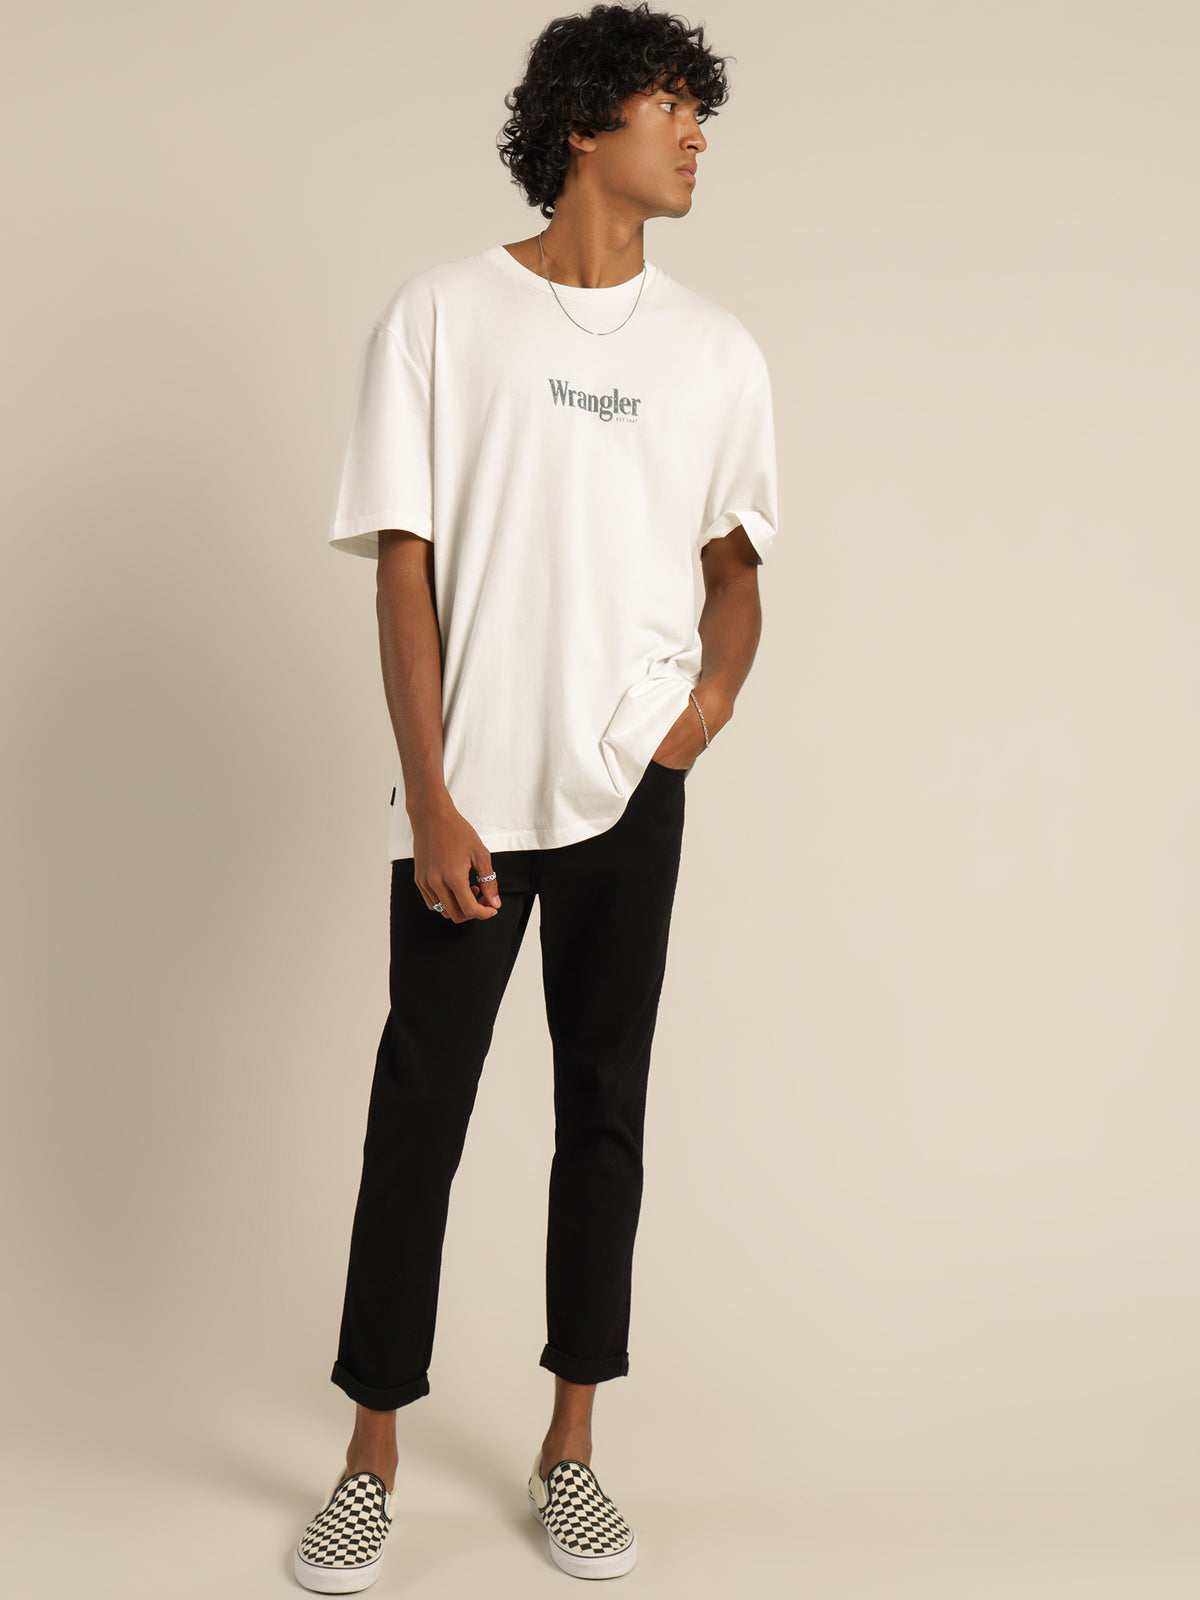 Wrangler Baggy Model T-Shirt in White